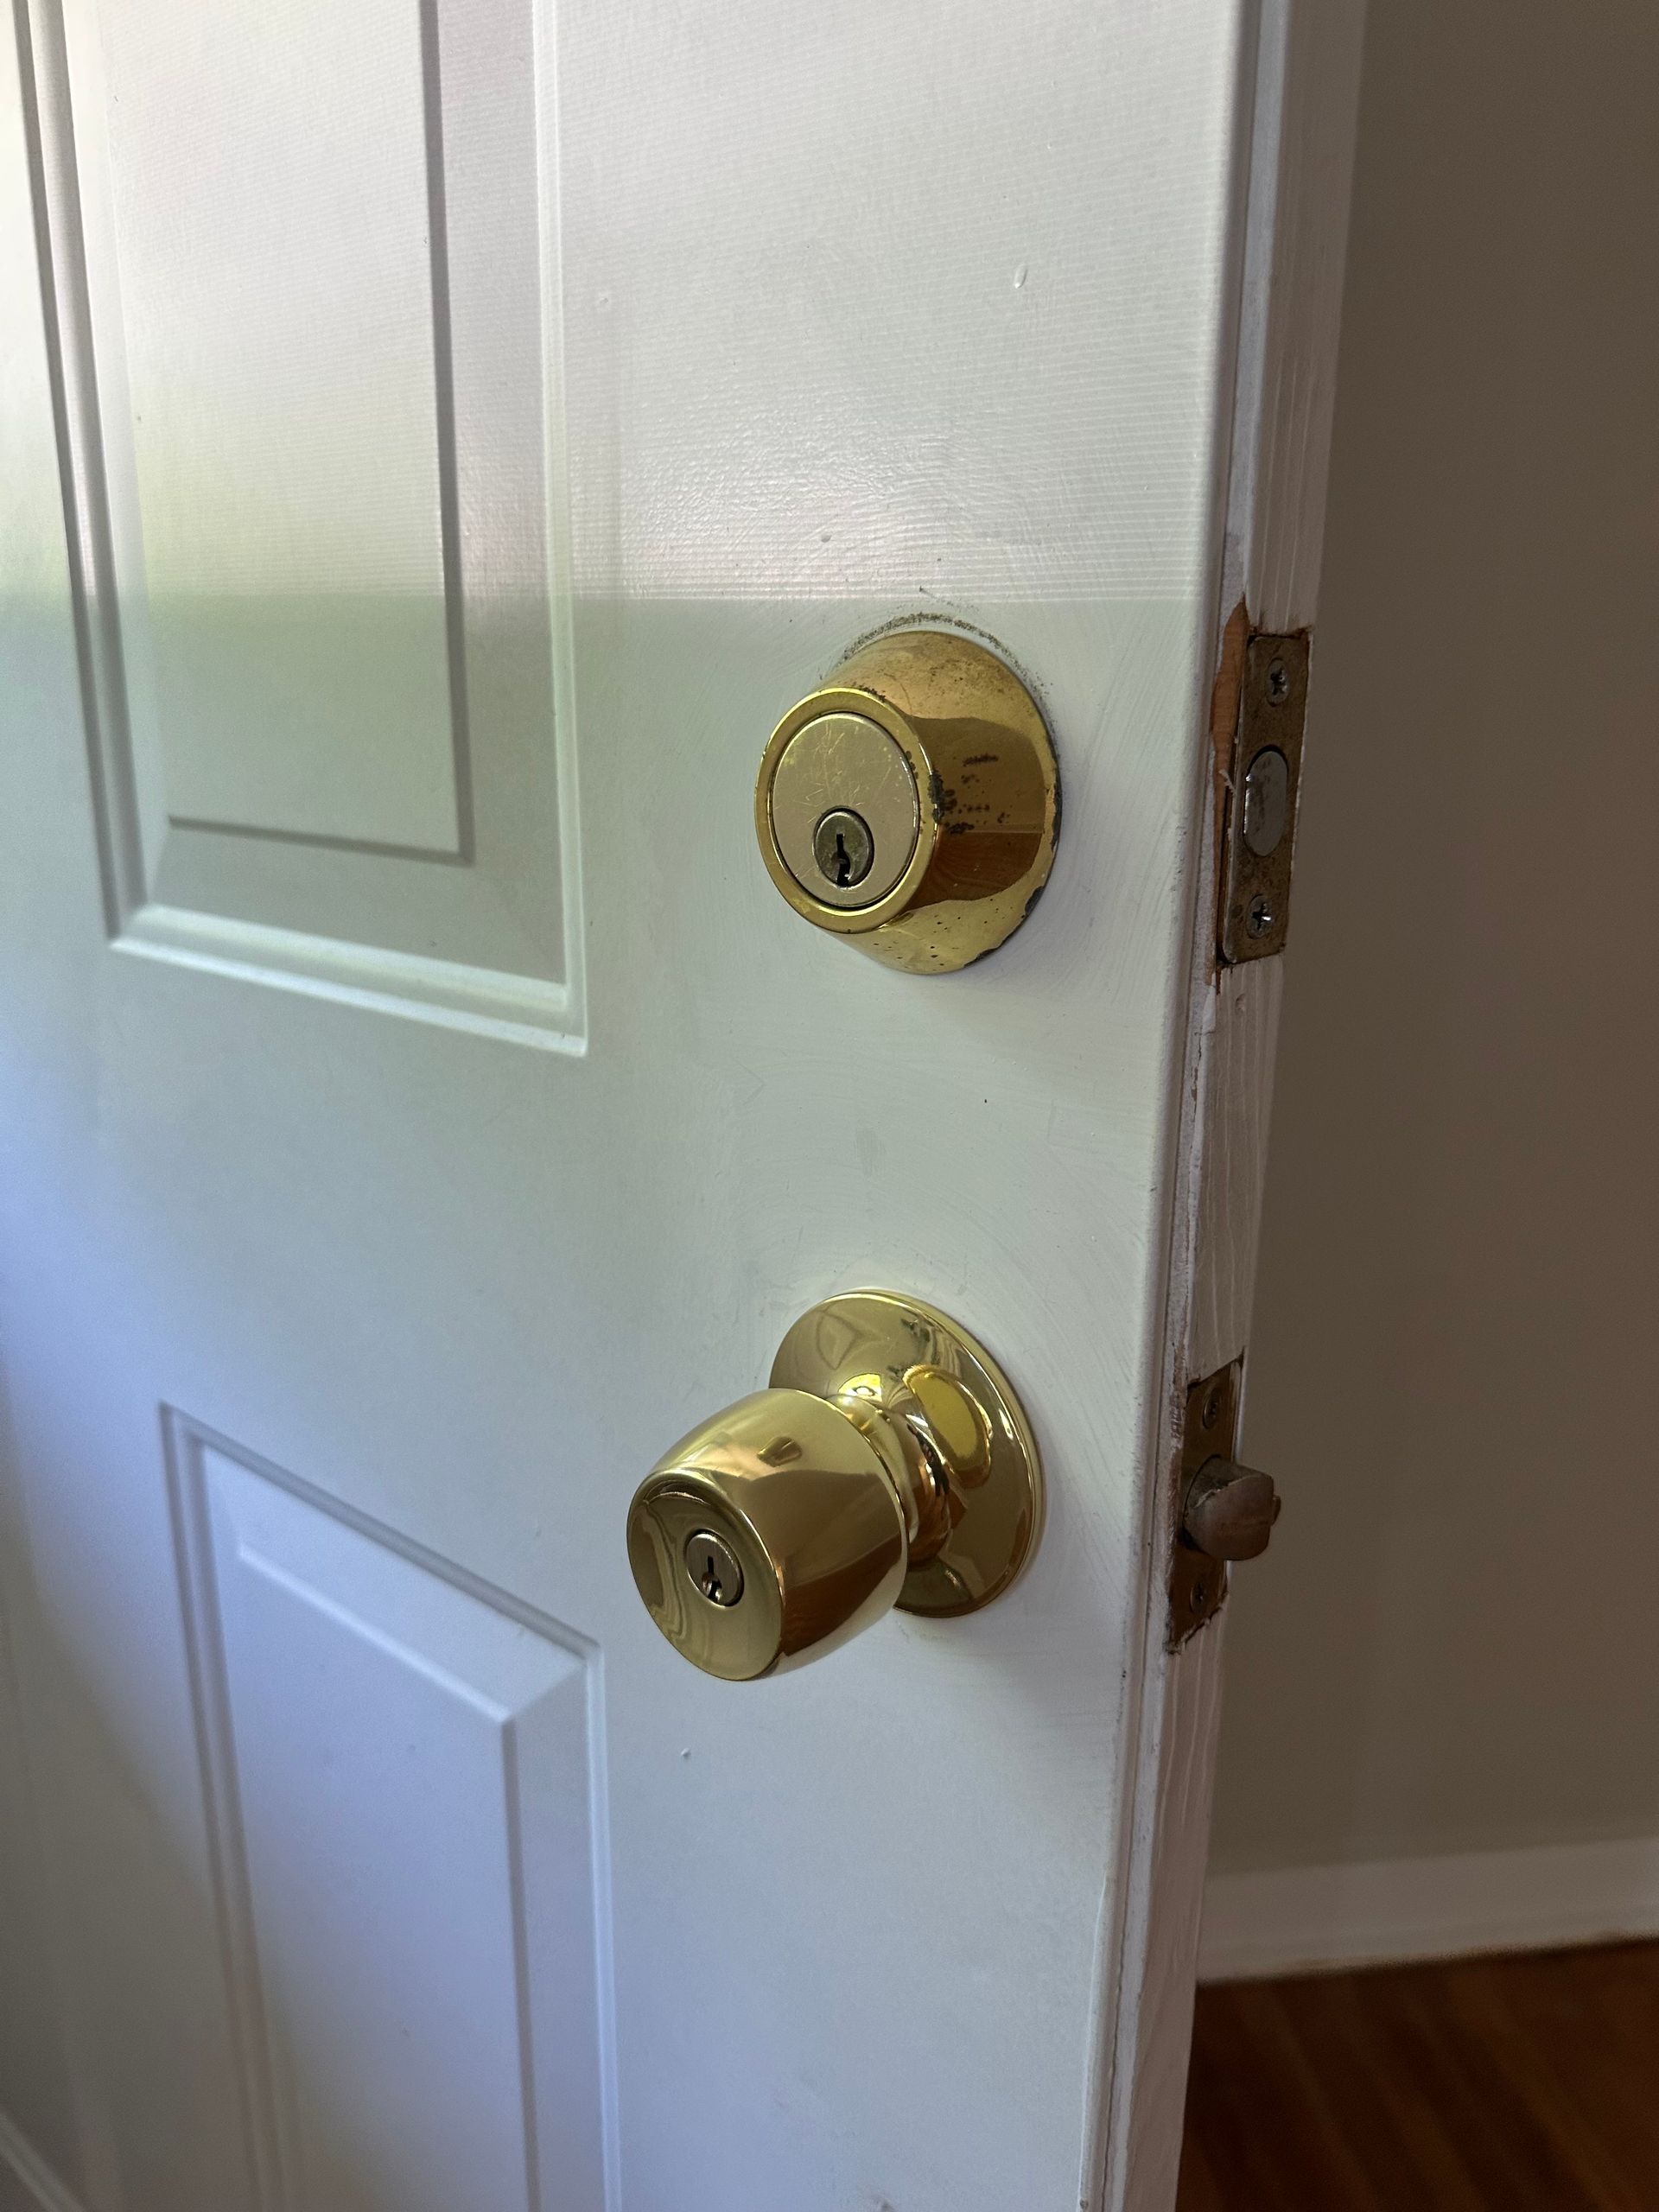 a brass doorknob and deadbolt